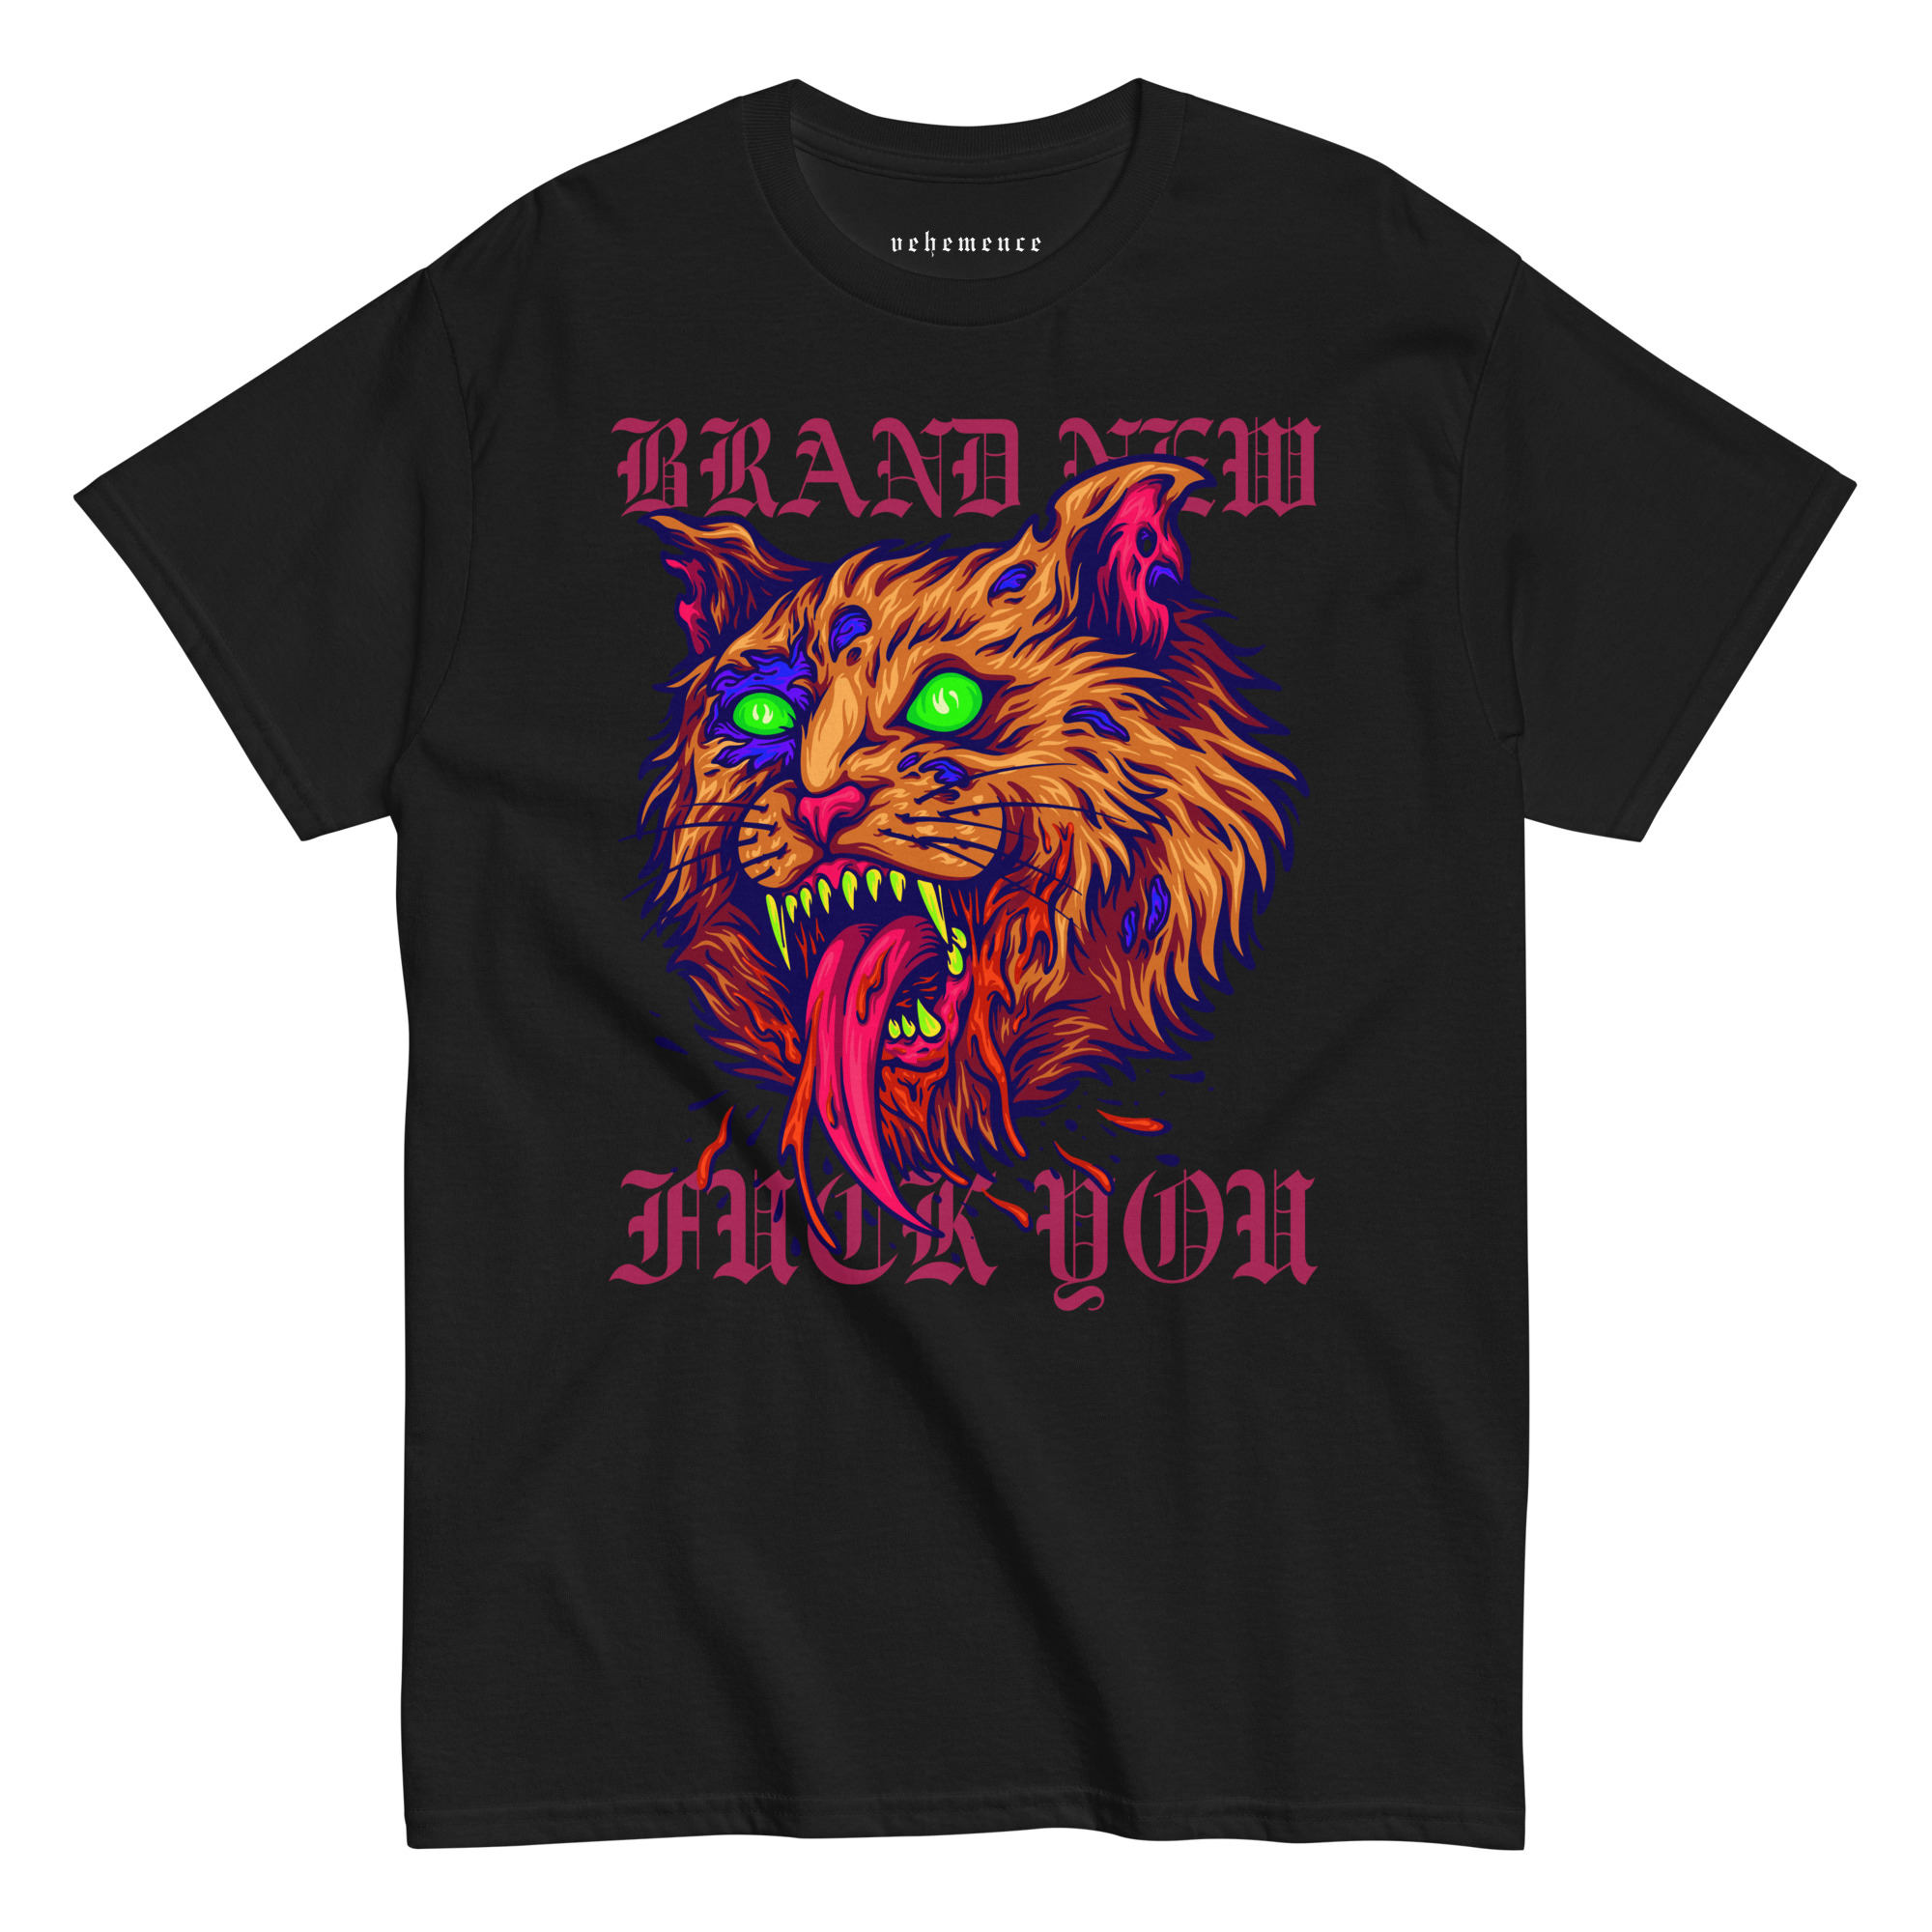 Brand New You t-shirt – black